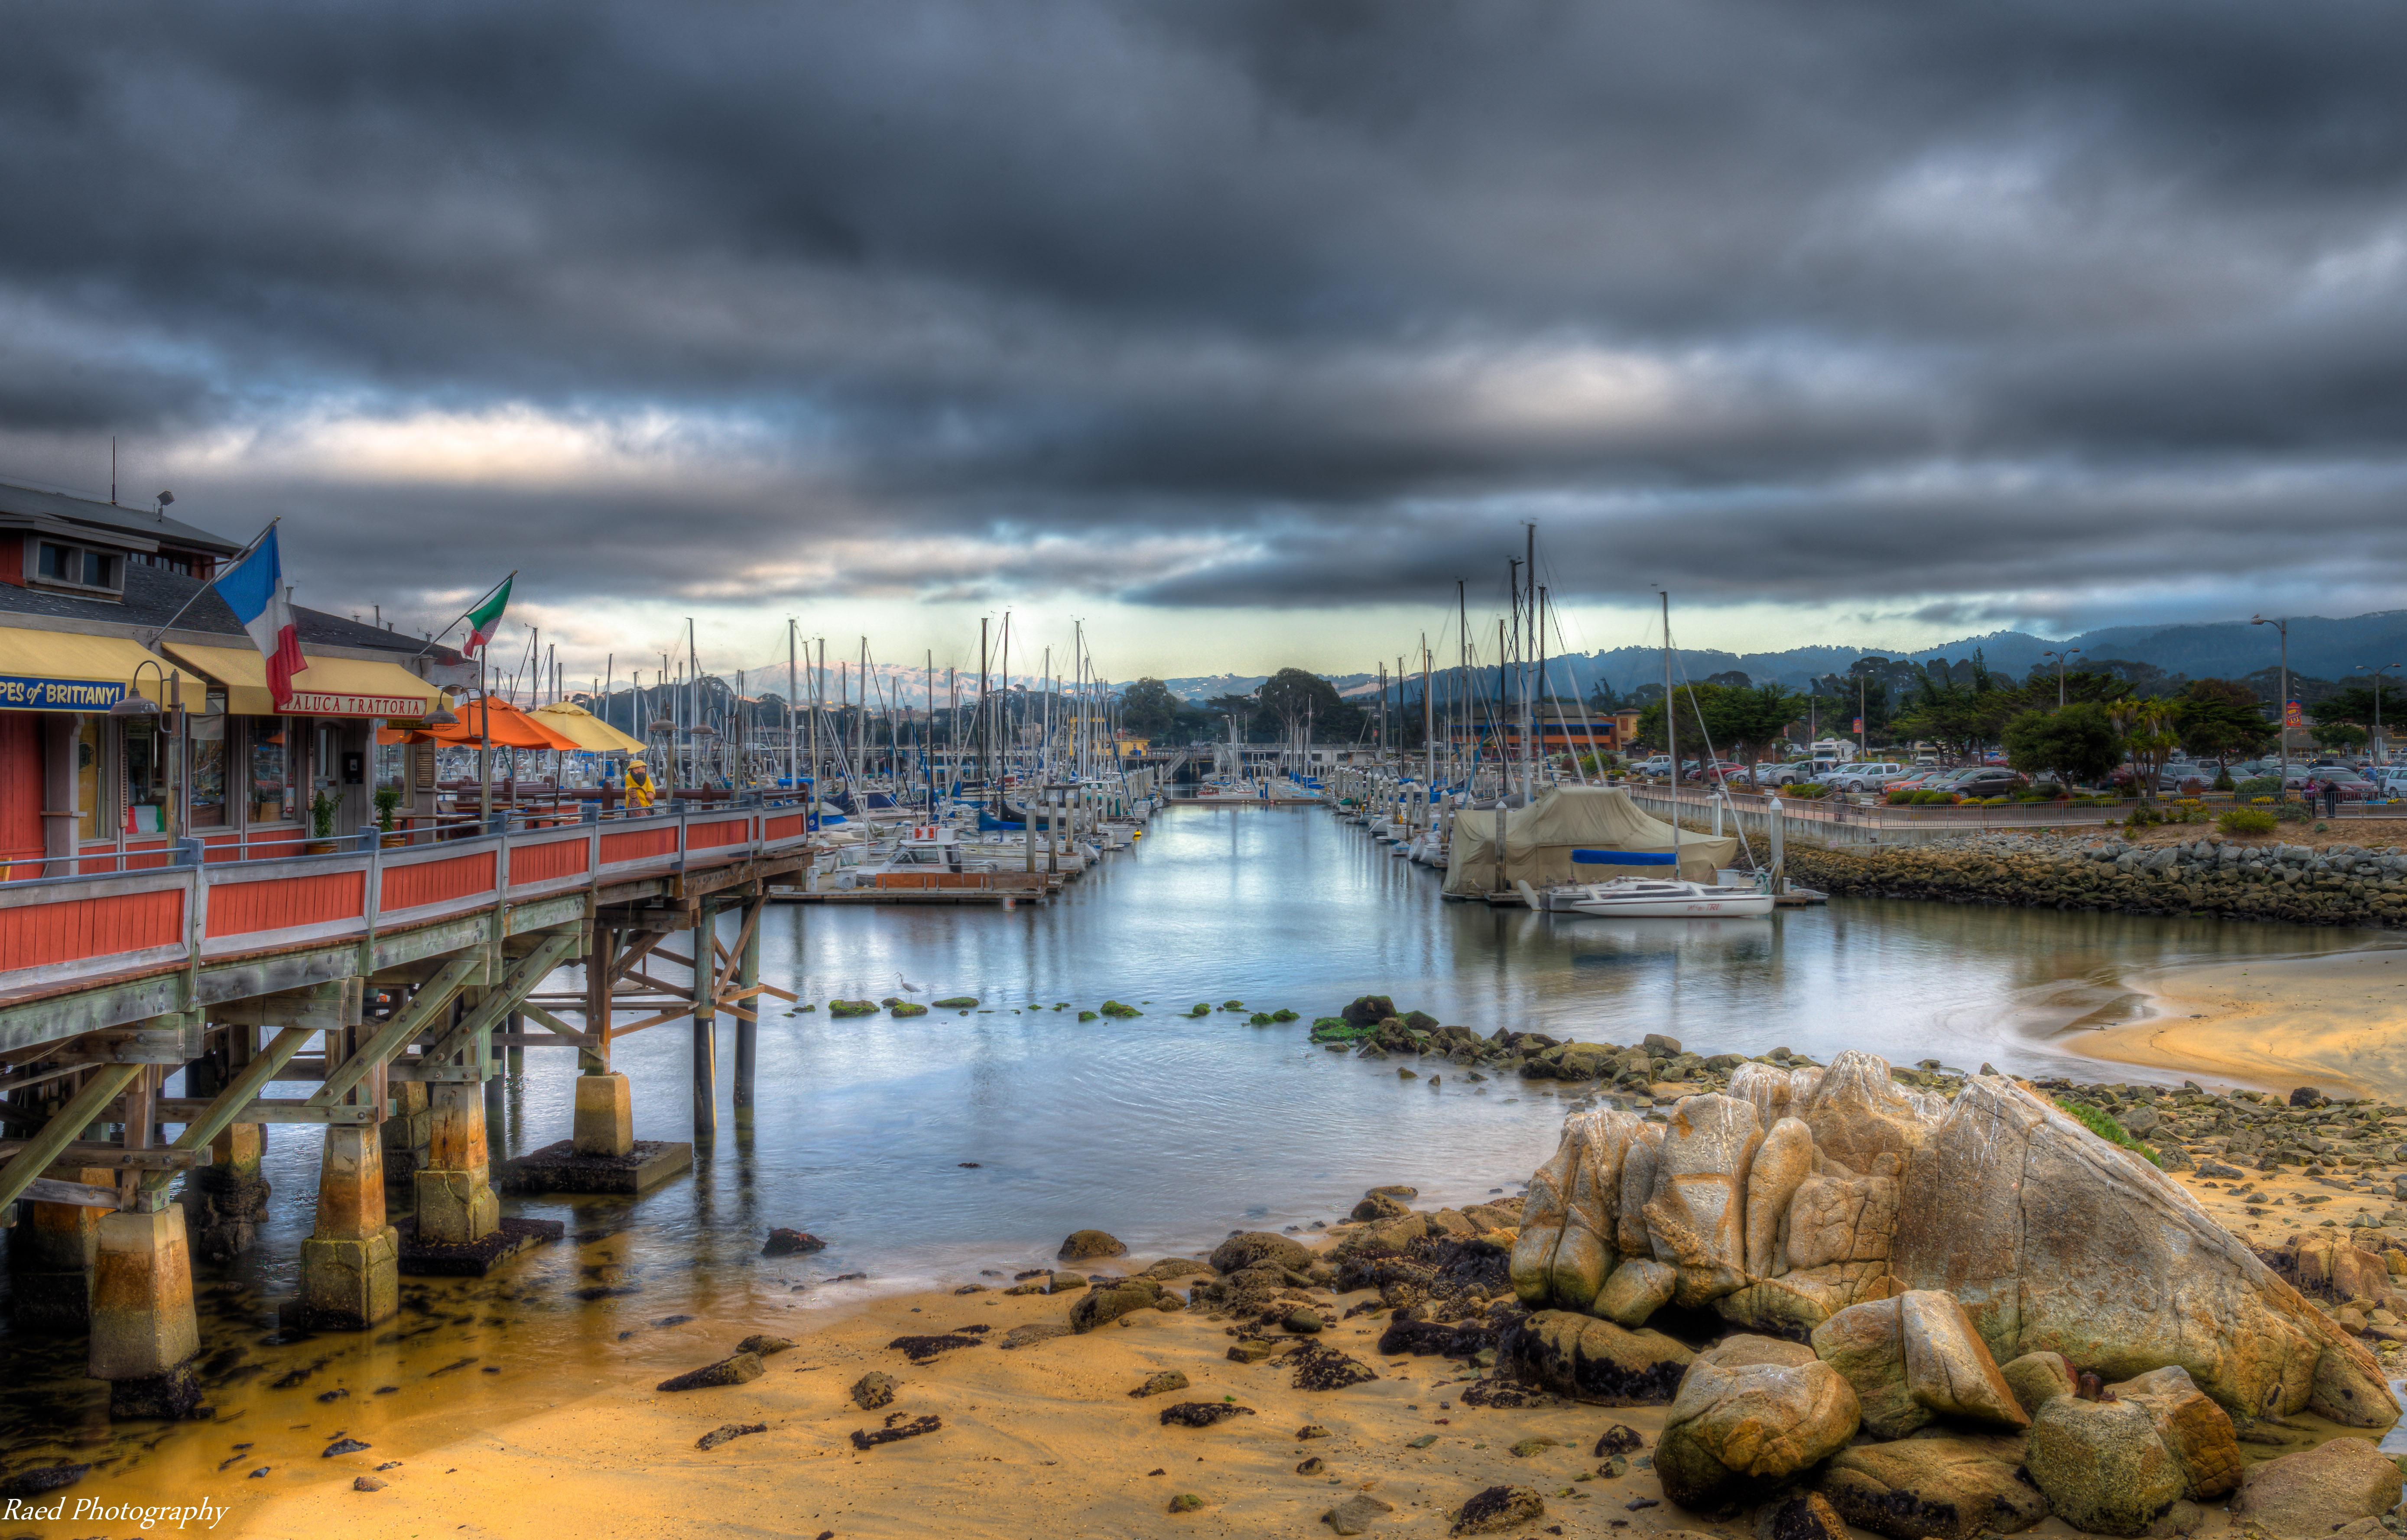 Monterey fisherman's wharf. My Camera Journal